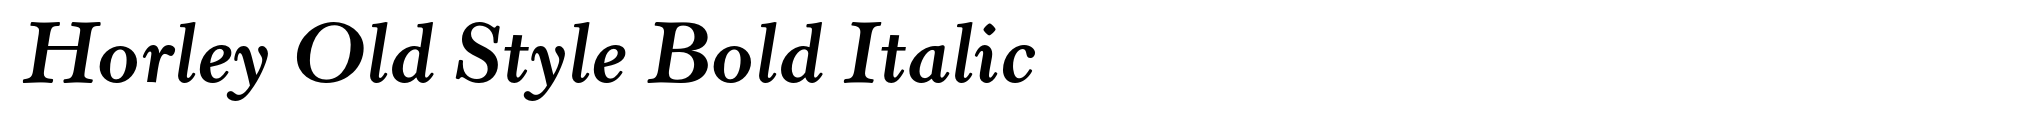 Horley Old Style Bold Italic image